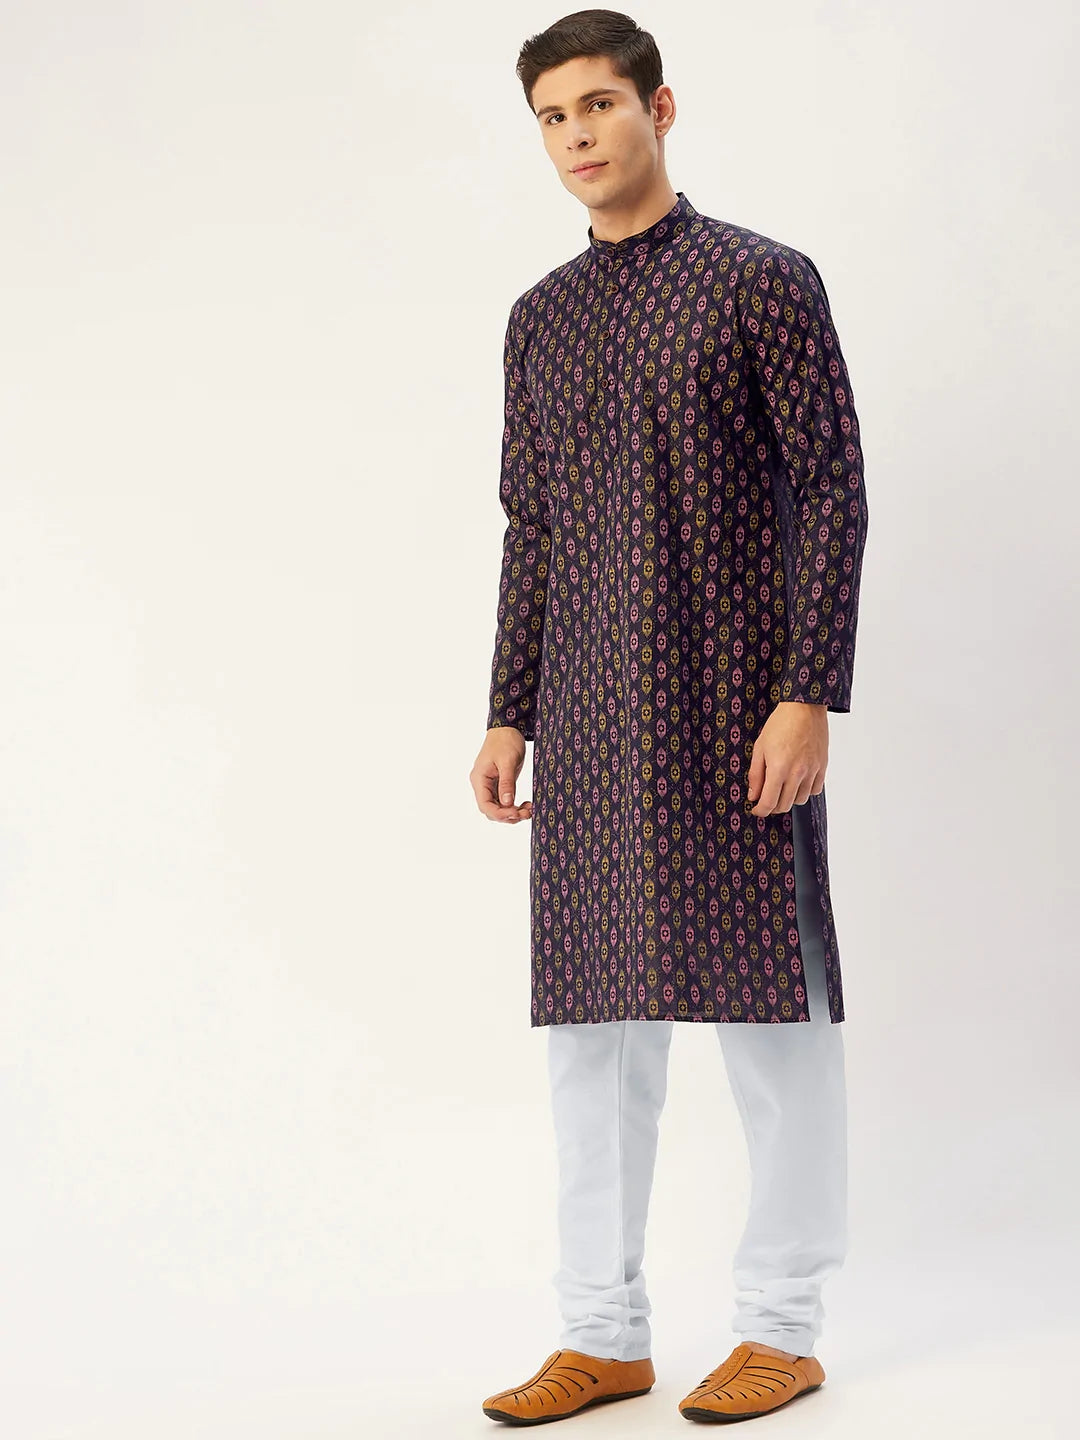 Jompers Men's Navy Cotton Ikat printed kurta Pyjama Set ( JOKP 651 Navy )